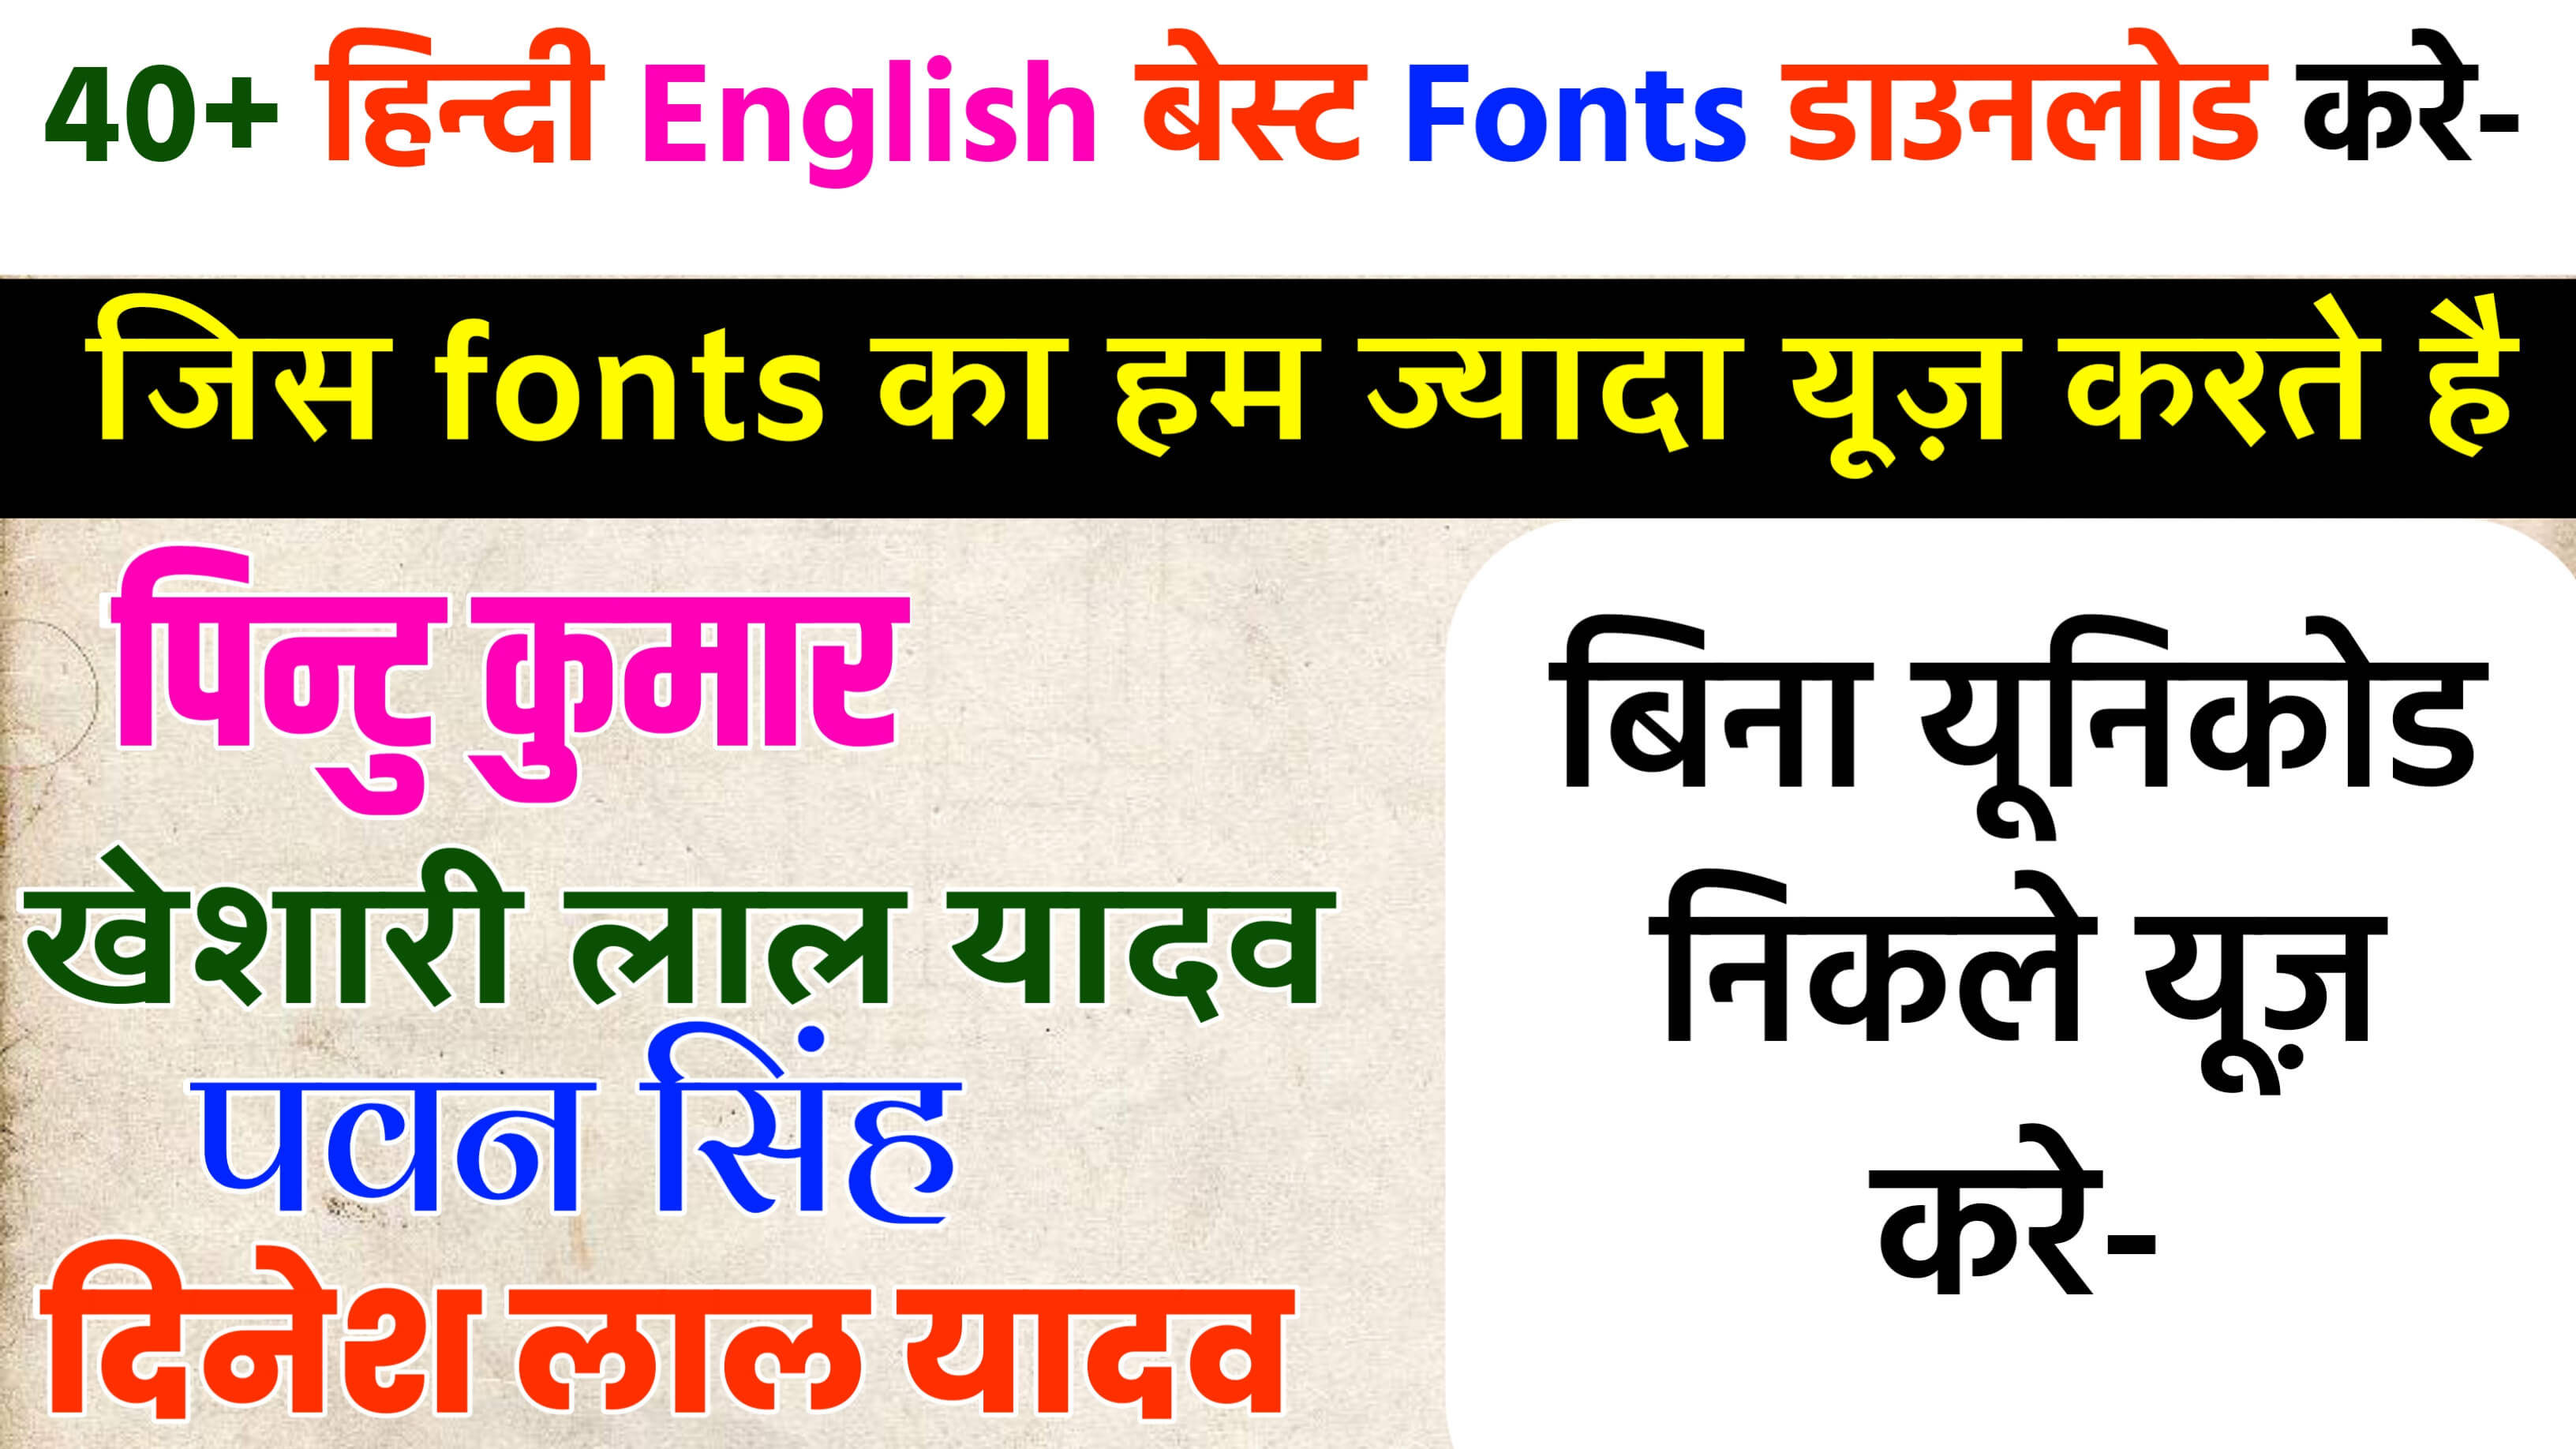 Hindi font download kaise karen|  hindi font zip file download| Pixellab hindi font download